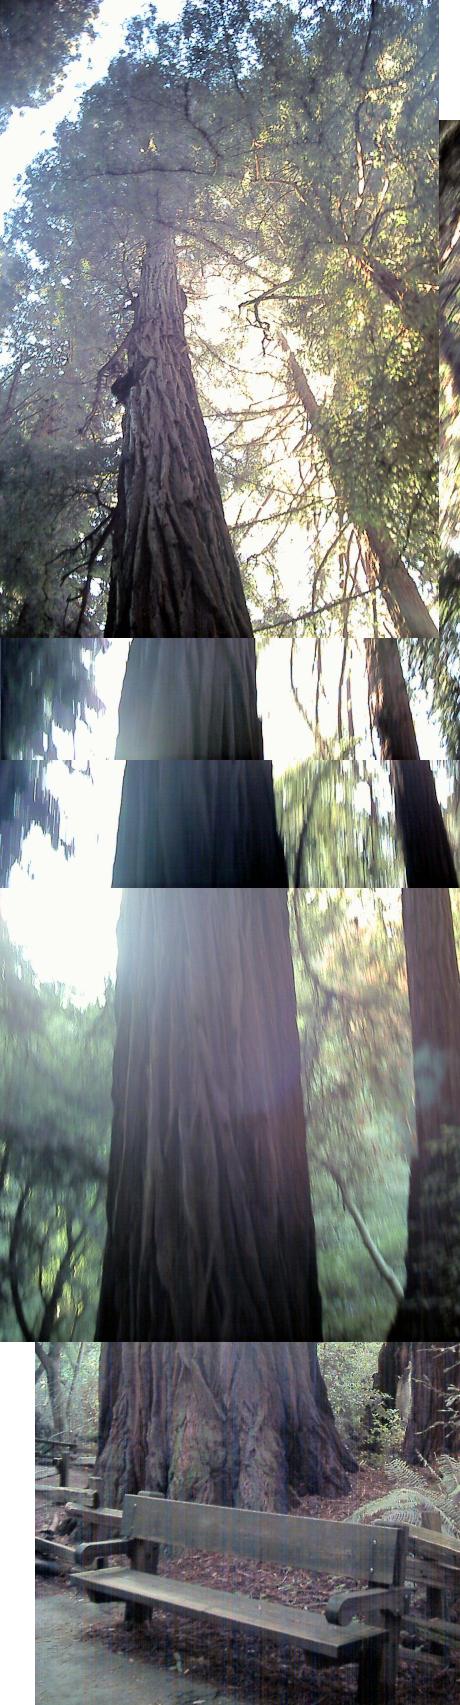 Pinchot redwood